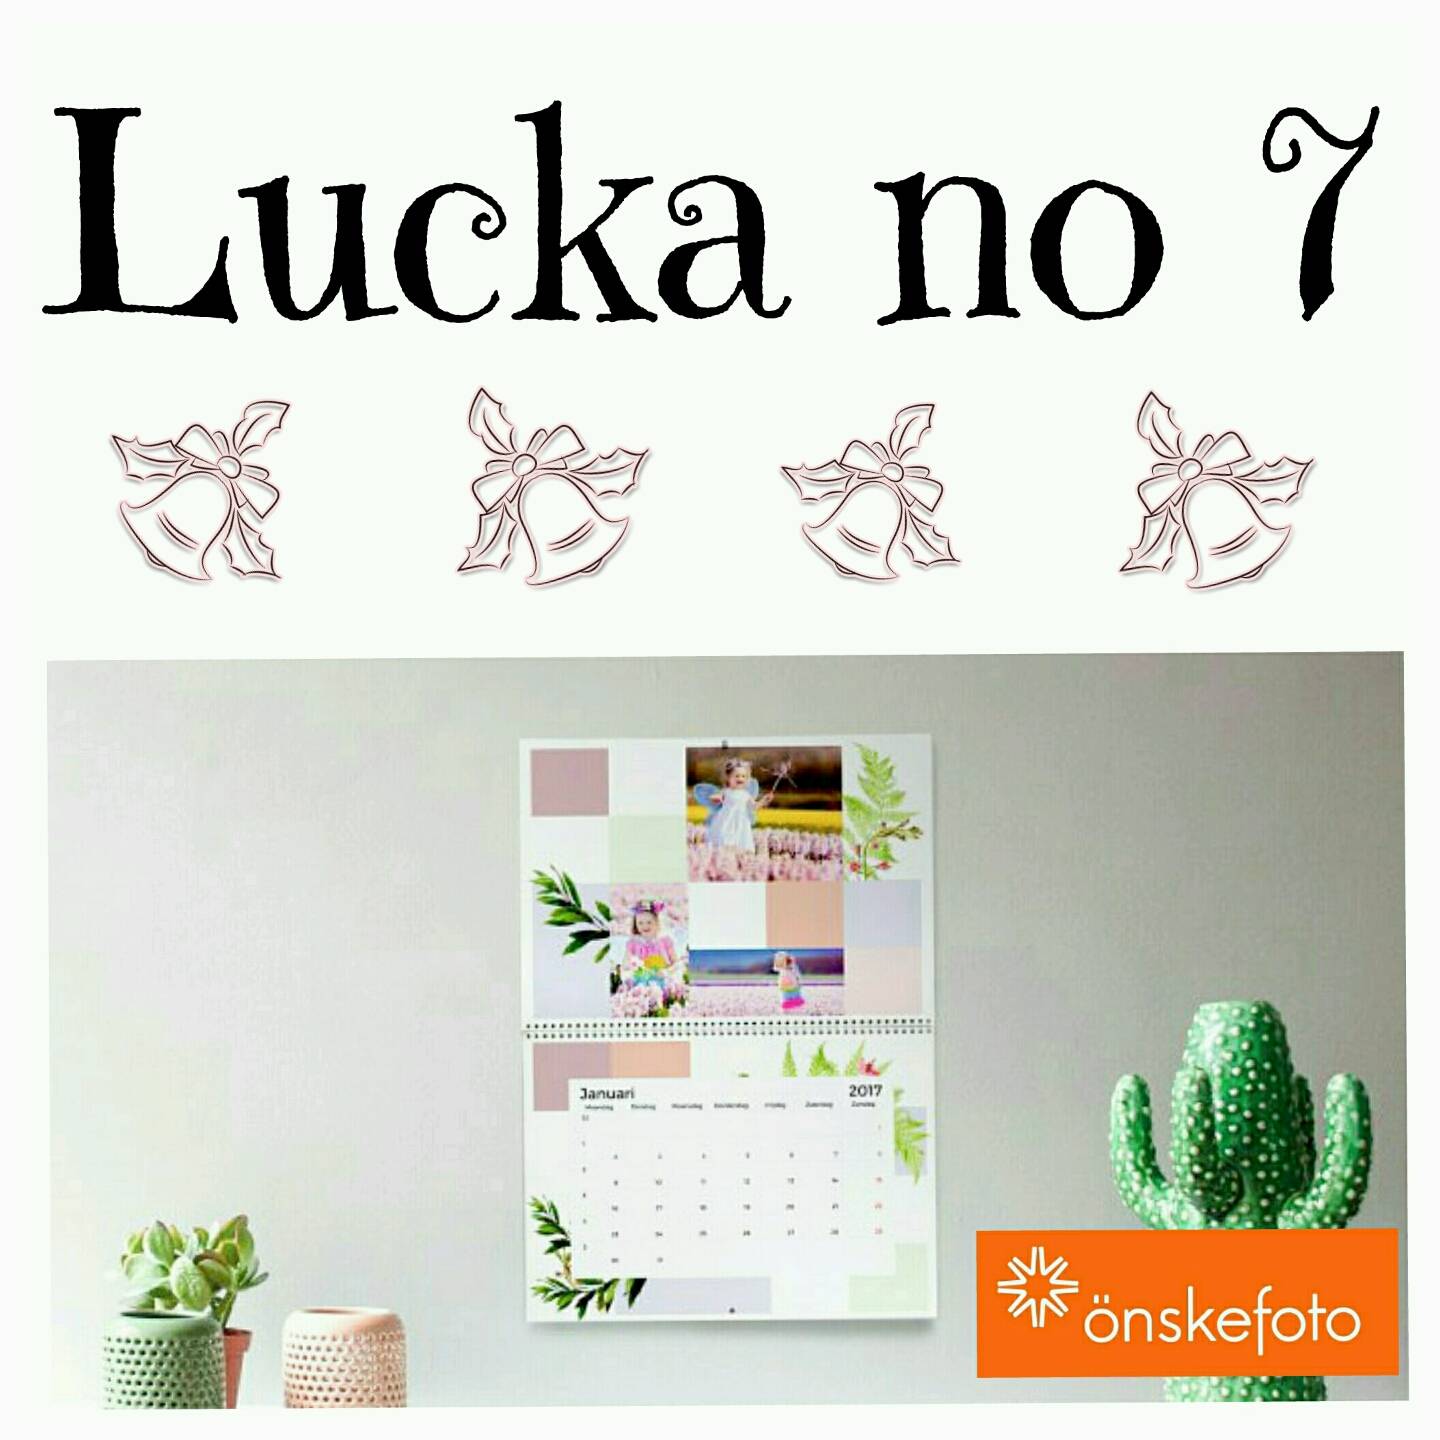 Lucka 7